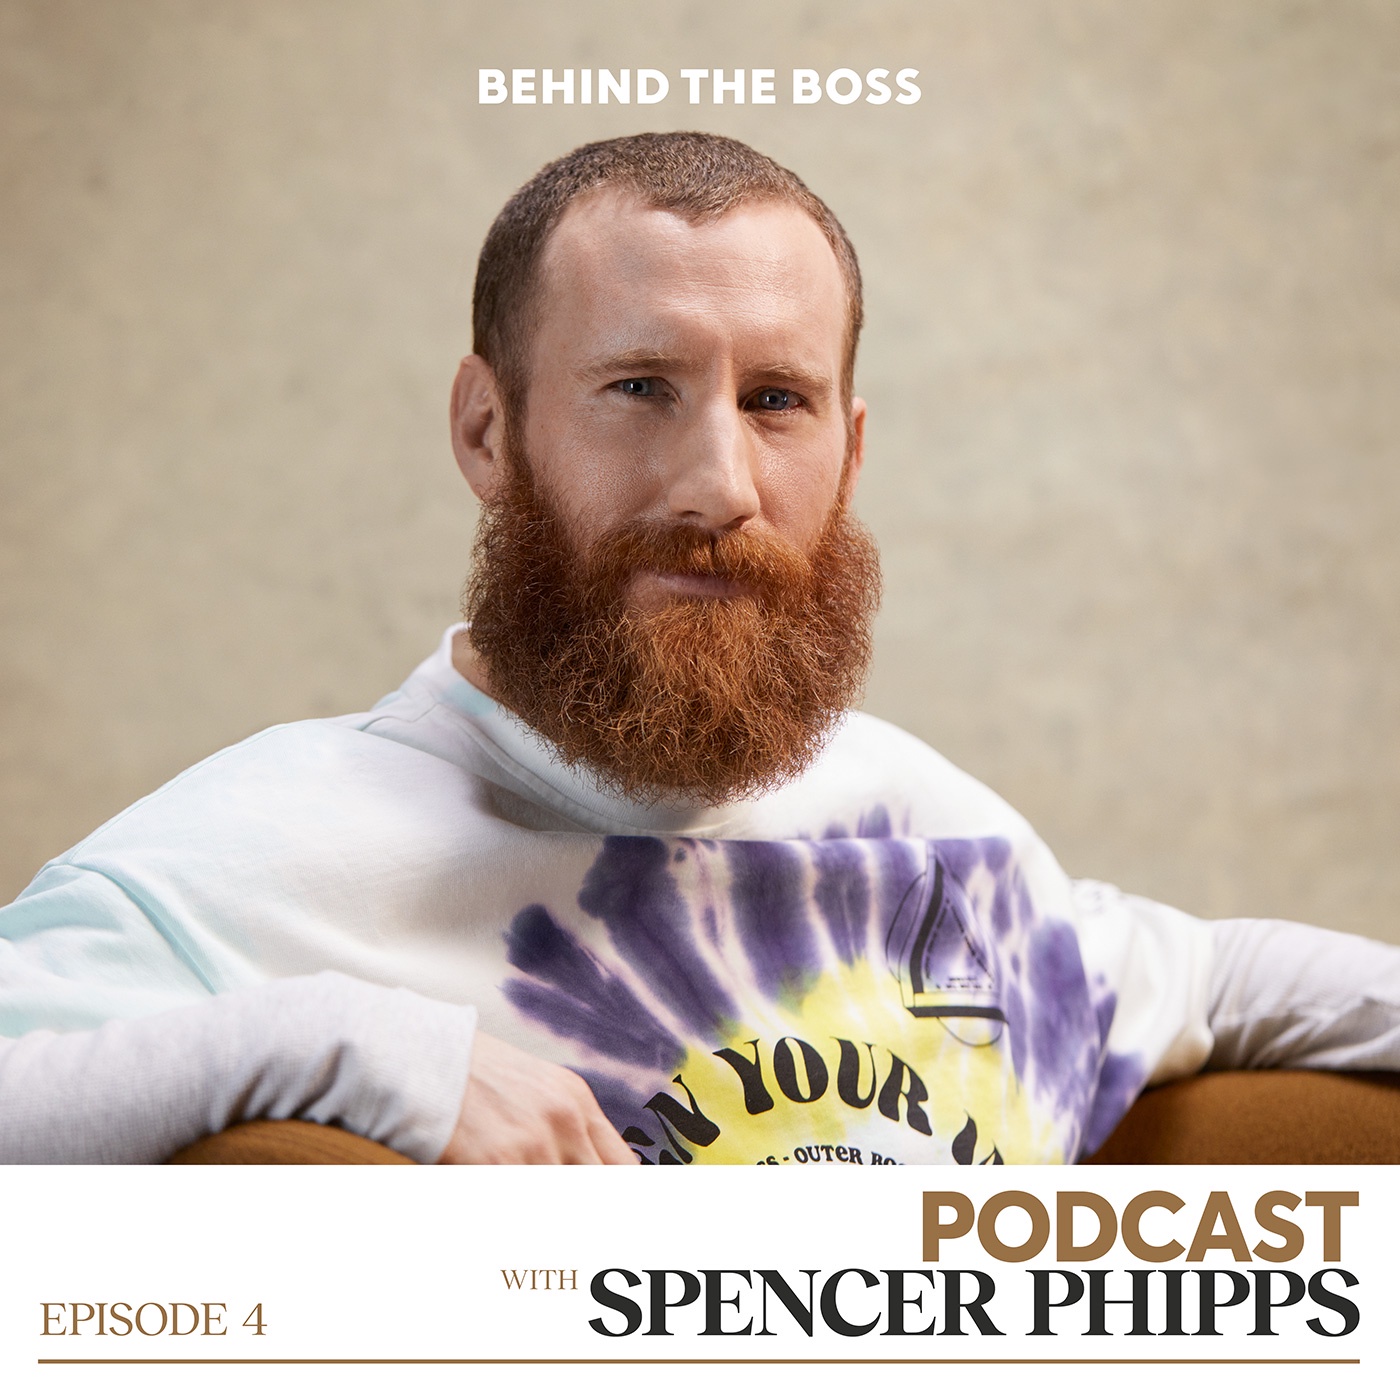 #4 Spencer Phipps - Fashion Designer